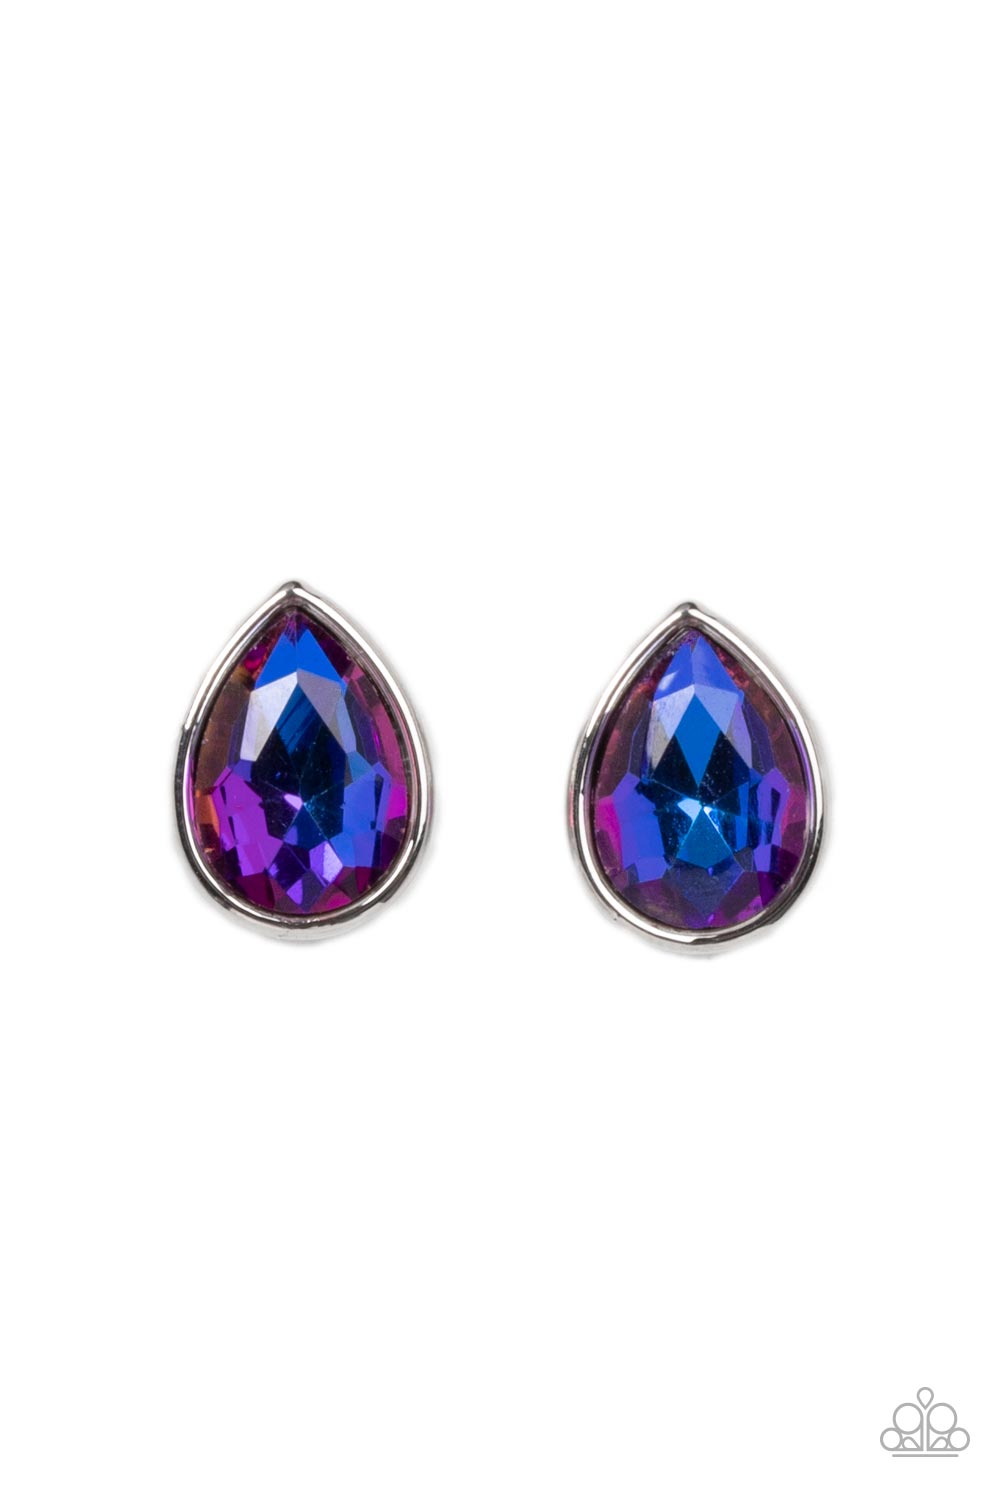 Iridescent Starlet Shimmer Earrings Single Pair